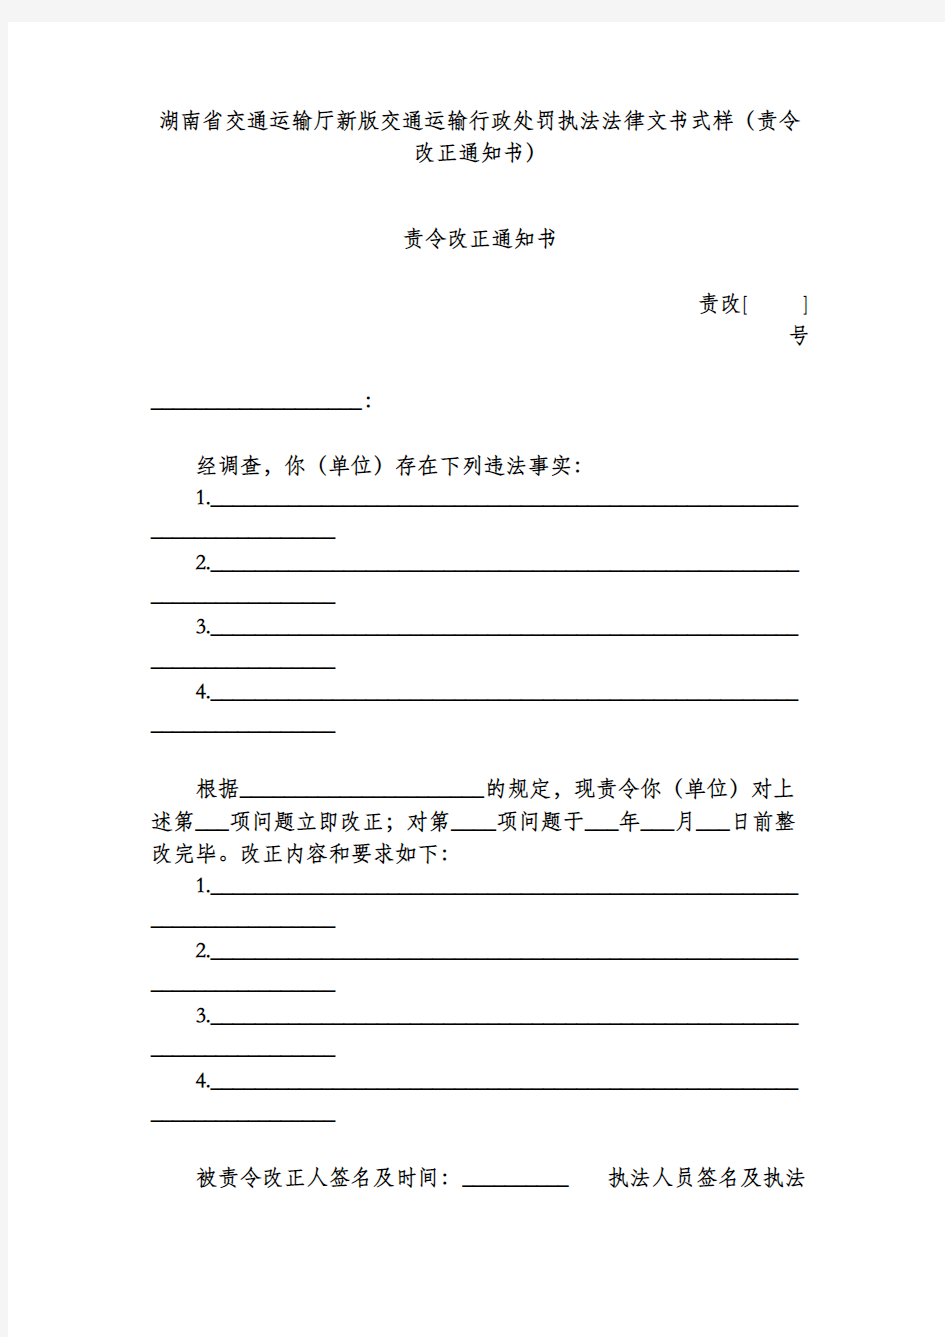 湖南省交通运输厅新版交通运输行政处罚执法法律文书式样(责令改正通知书)